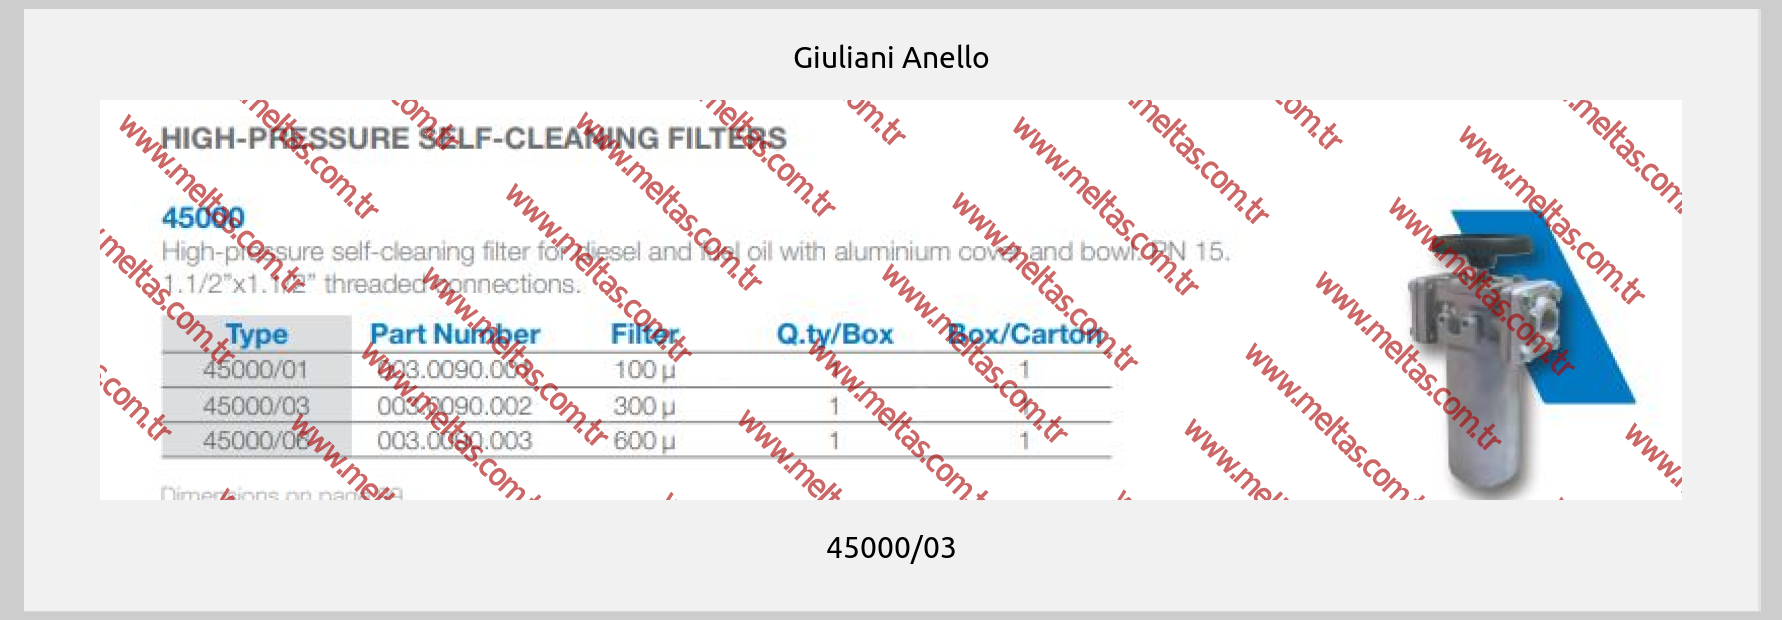 Giuliani Anello-45000/03